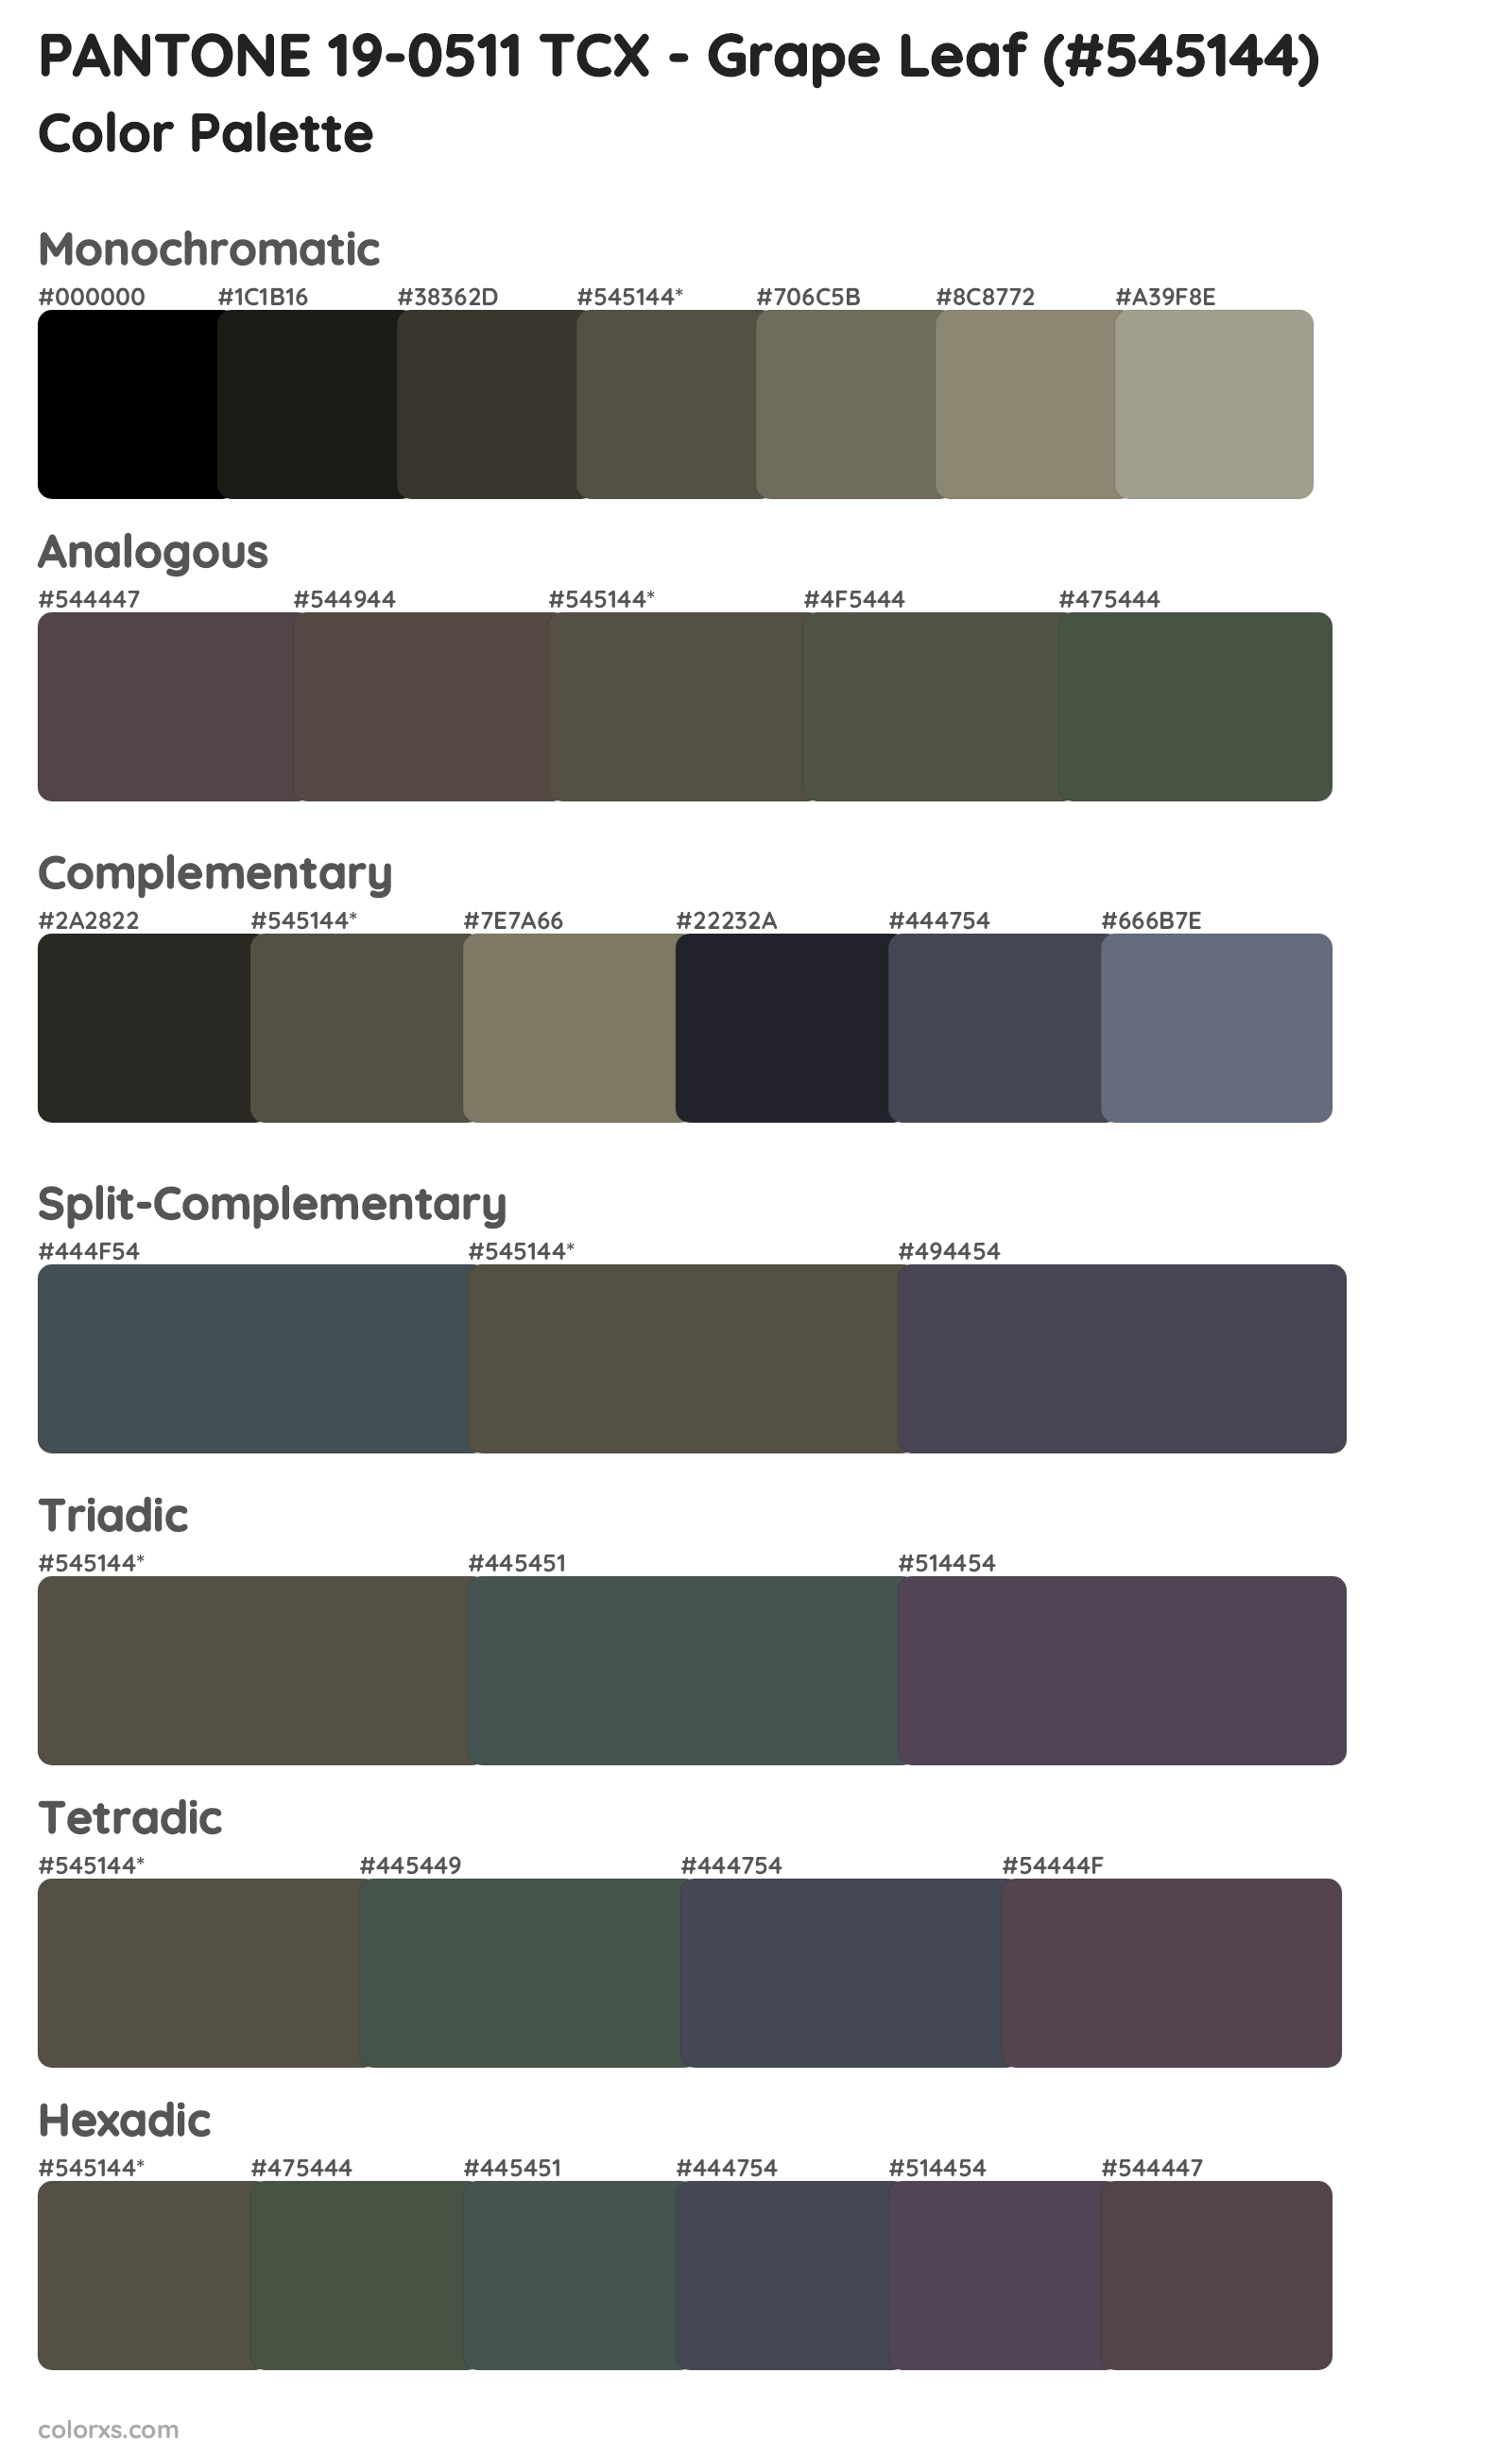 PANTONE 19-0511 TCX - Grape Leaf Color Scheme Palettes